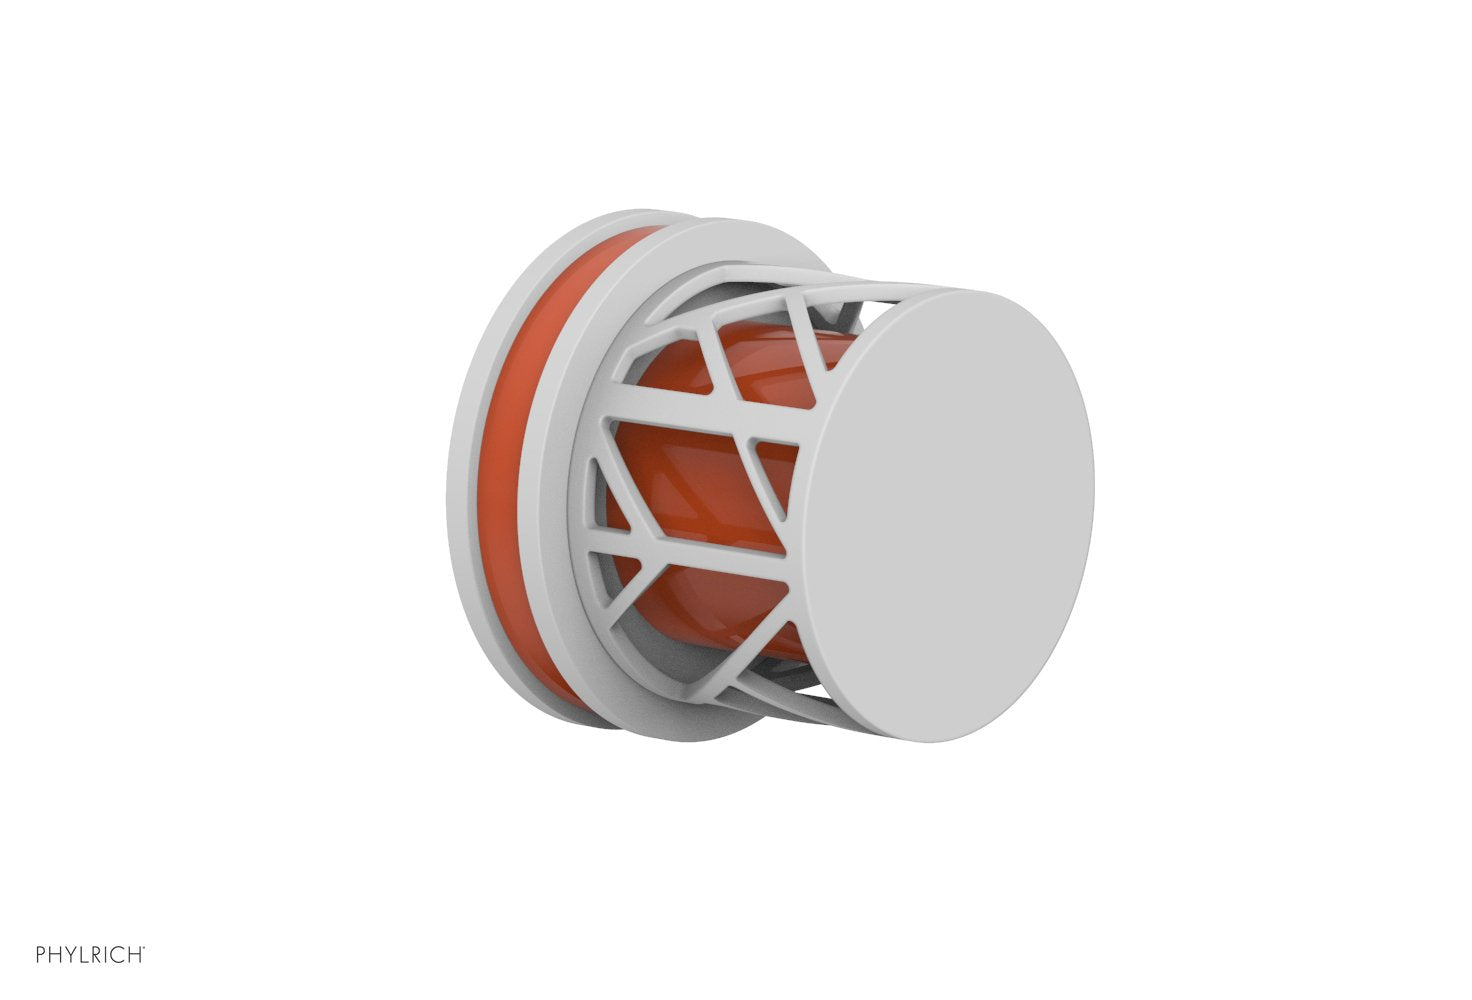 Phylrich JOLIE Volume Control/Diverter Trim - Round Handle with "Orange" Accents